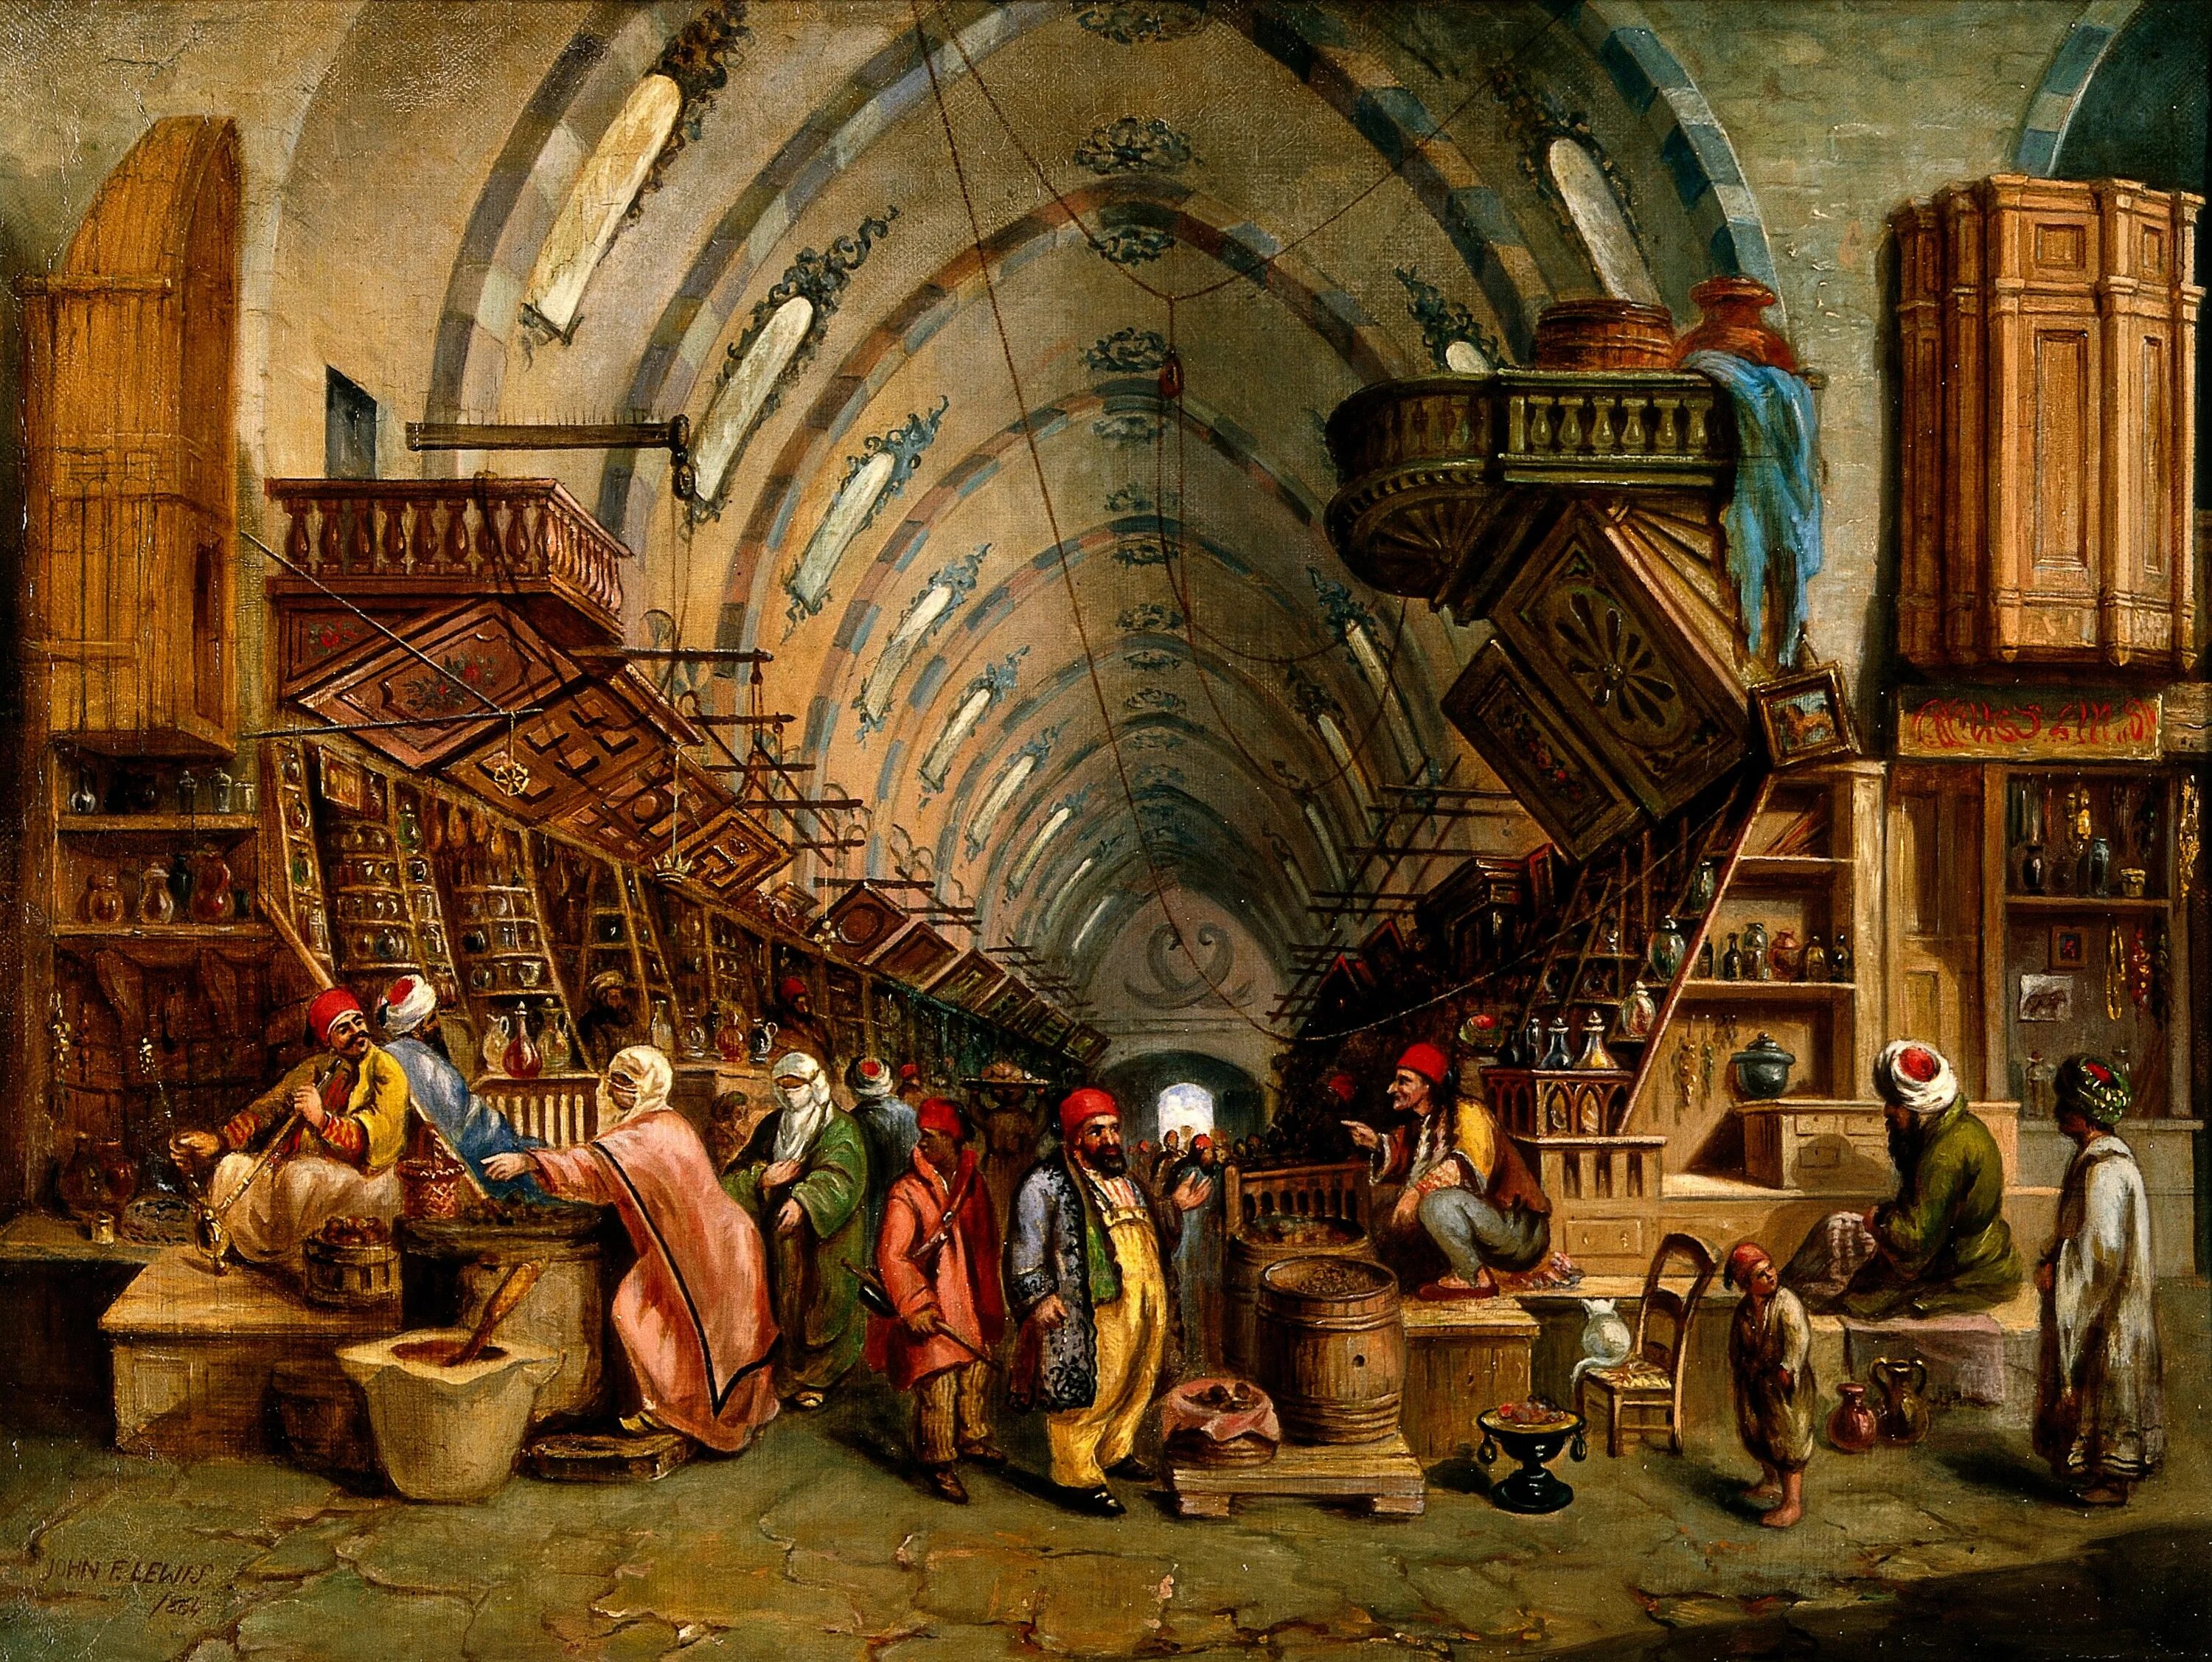 Товар древности. Базар средневековый Багдад. Константинополь картина средневекового художника. Индия рынок 15 век. Османская Империя 18 век торговля.